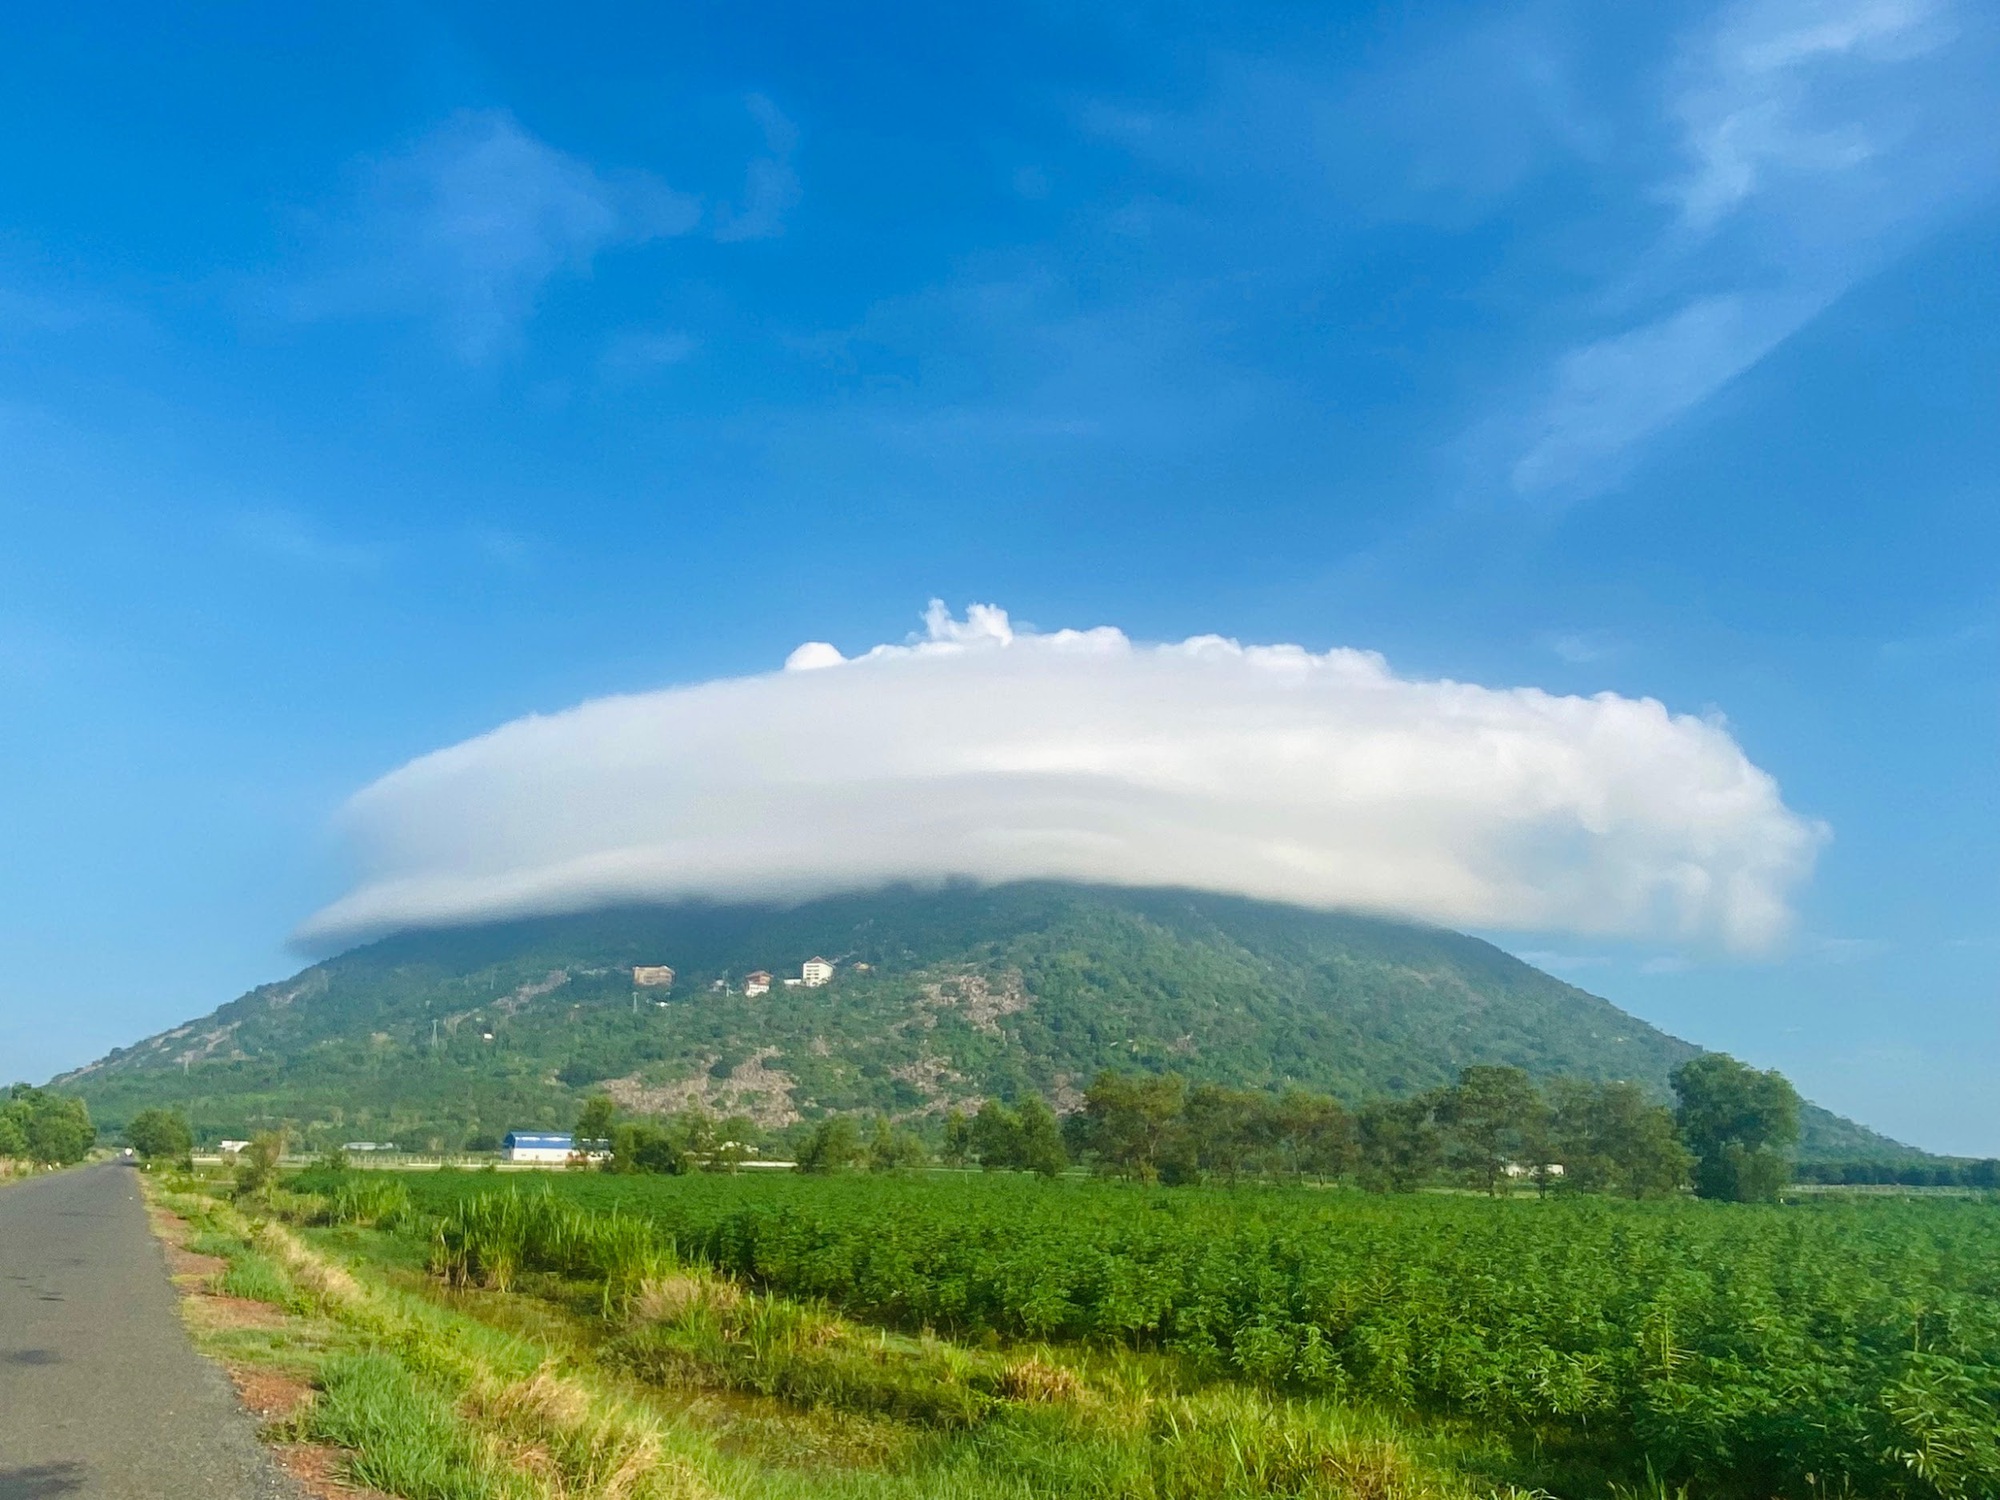 Núi Bà Đen - Tây Ninh đã đến mùa săn mây đẹp nhất trong năm - Ảnh 2.